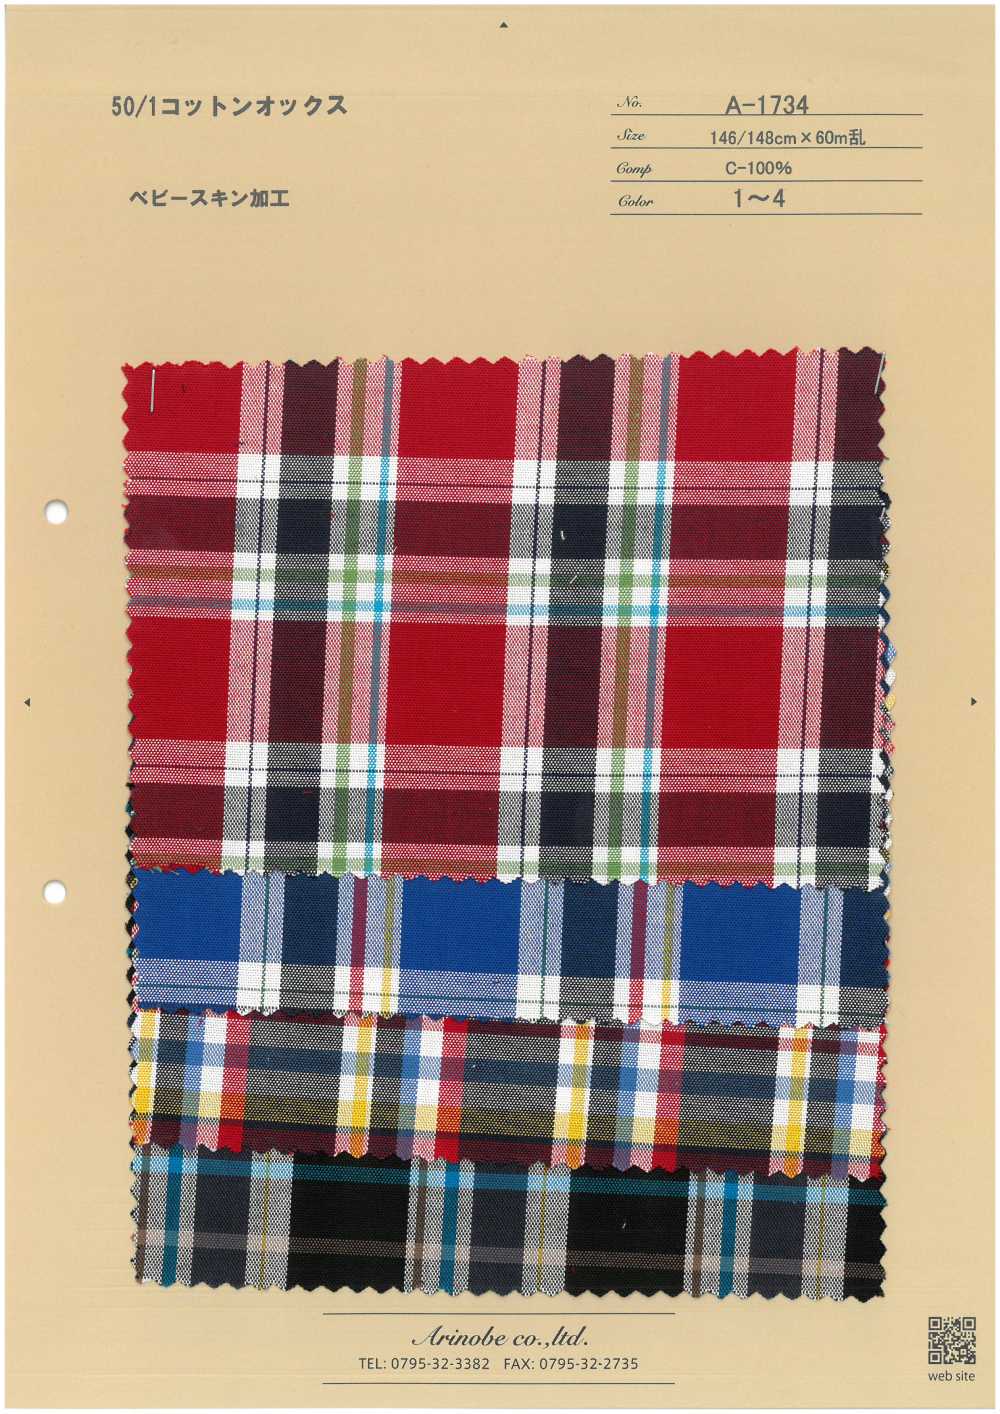 A-1734 50/1 Cotton Oxford[Textile / Fabric] ARINOBE CO., LTD.